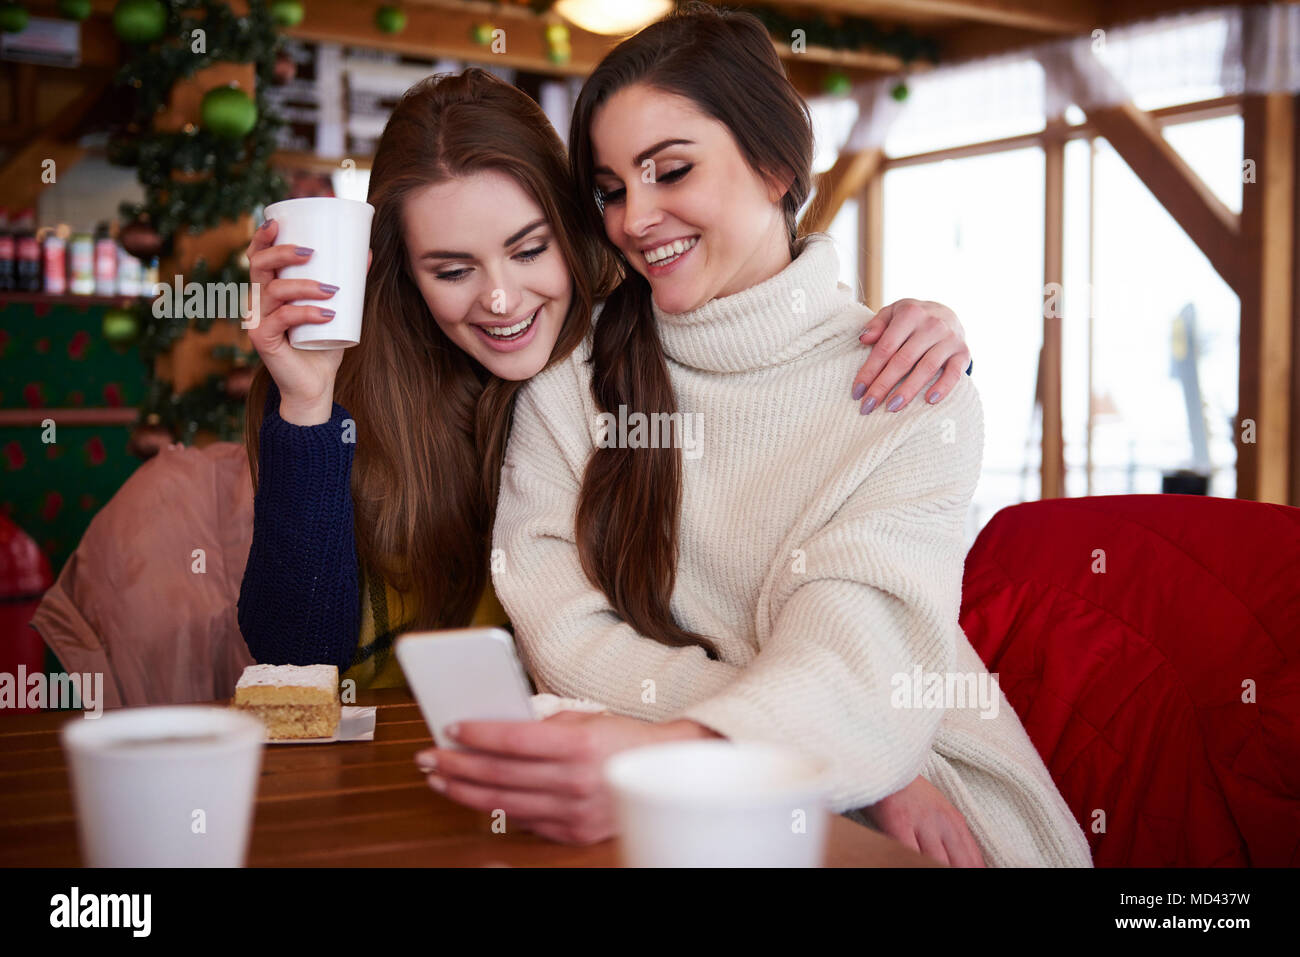 Las mujeres jóvenes sonriendo a través de mensaje de texto por teléfono móvil Foto de stock